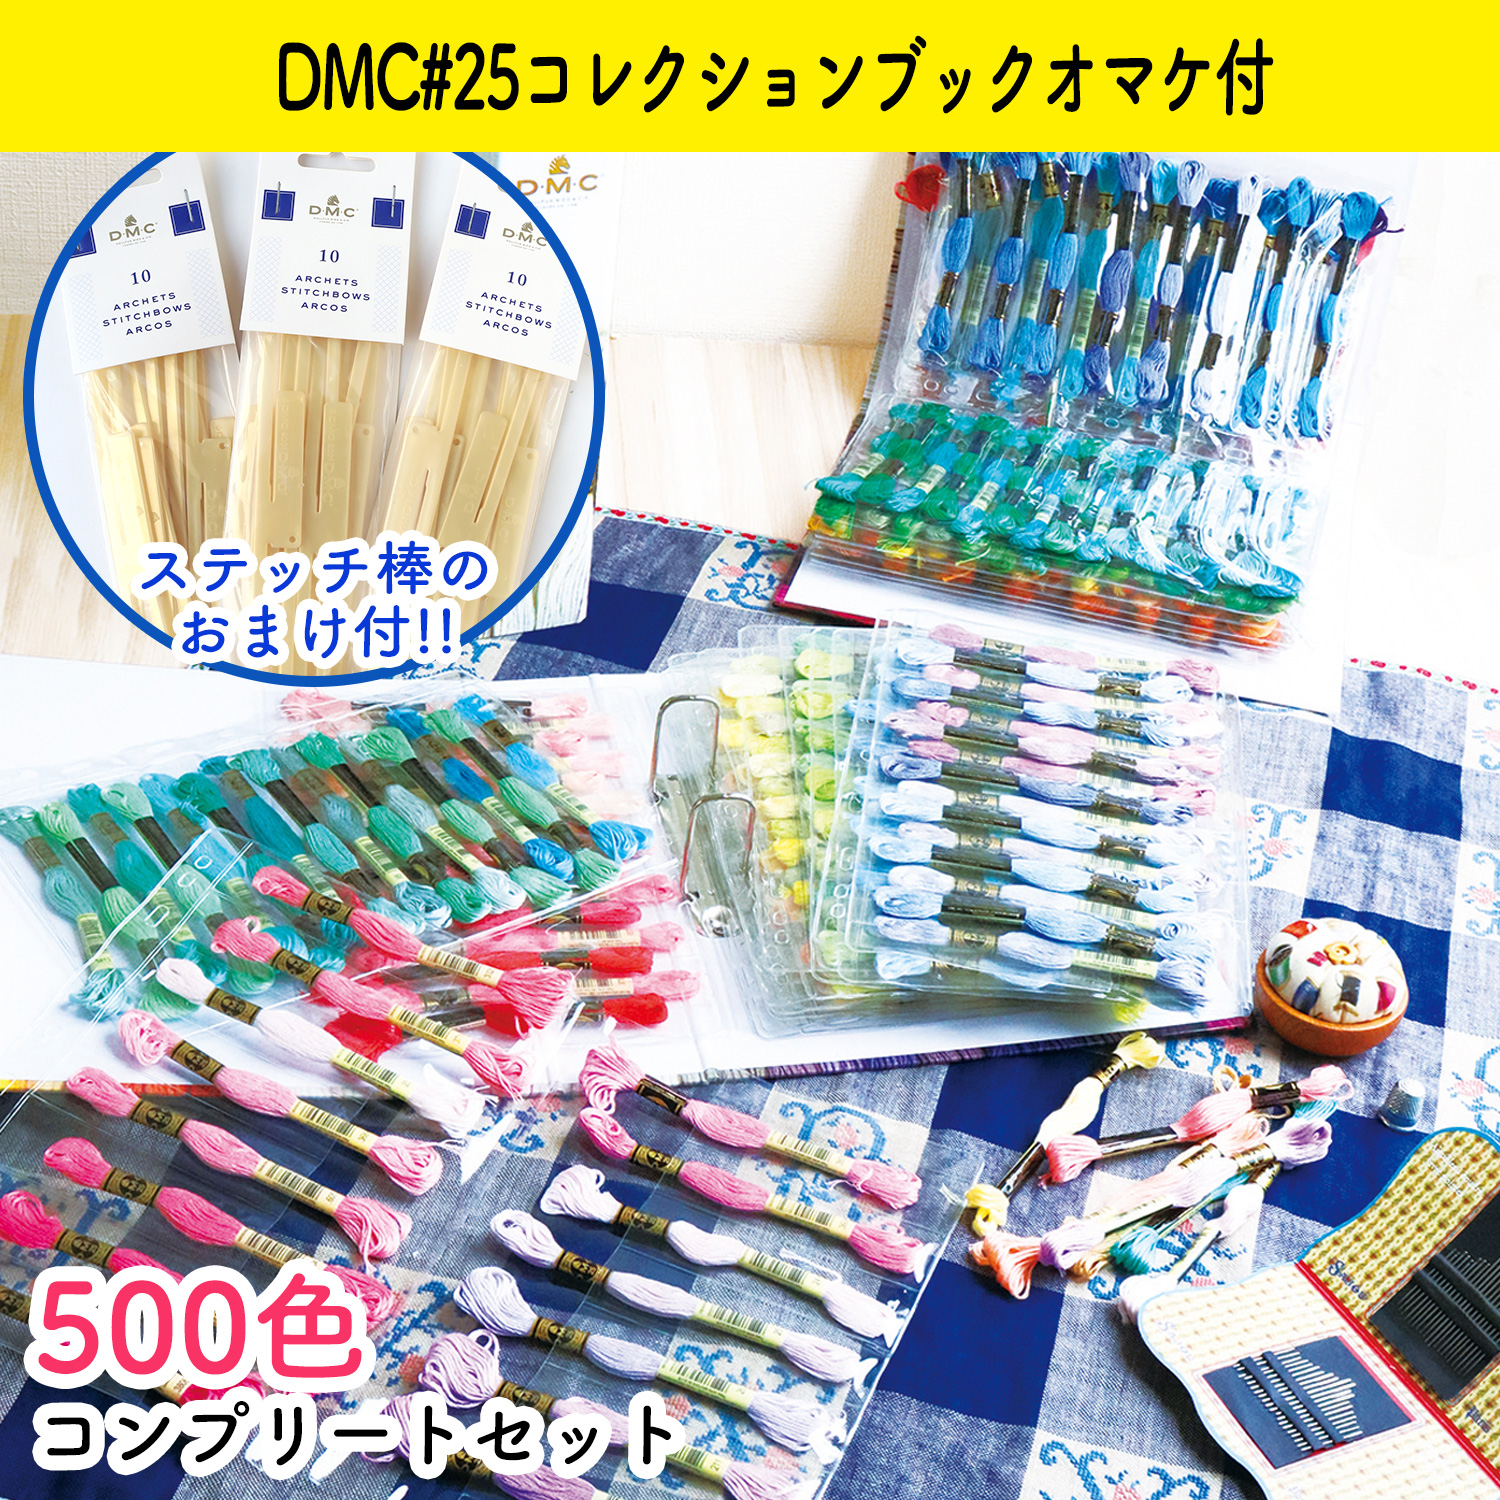 【数量限定】DMC-GC003SET-500 DMC25番糸スペシャル3種 全色セット おまけ付き (セット)